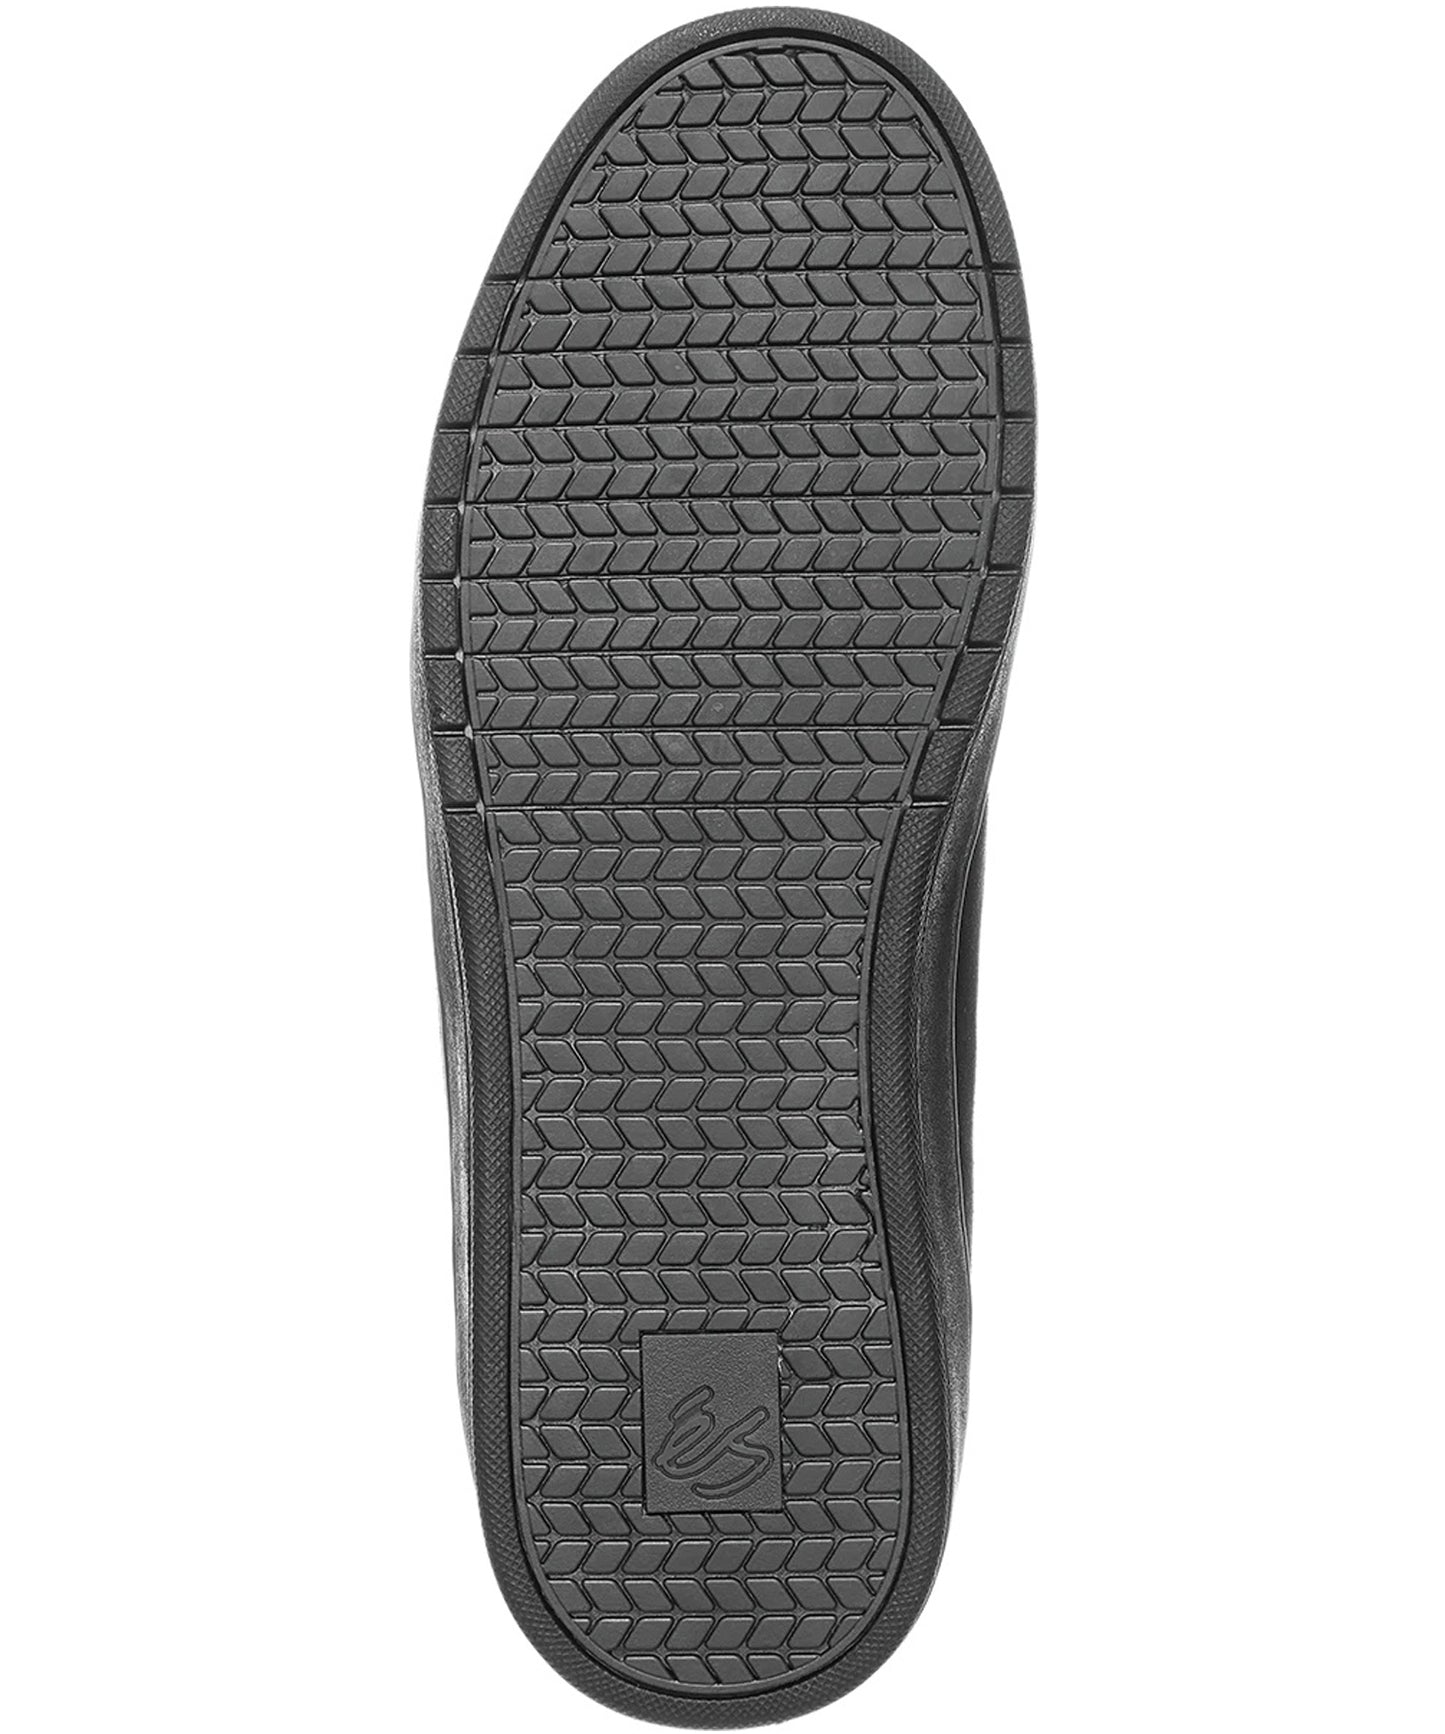 es-zapatillas-eos-color-negro-La reinvención de un clásico-gamuza-sintético-forma-estrecha-maravillosa-sensación-en-la-tabla.